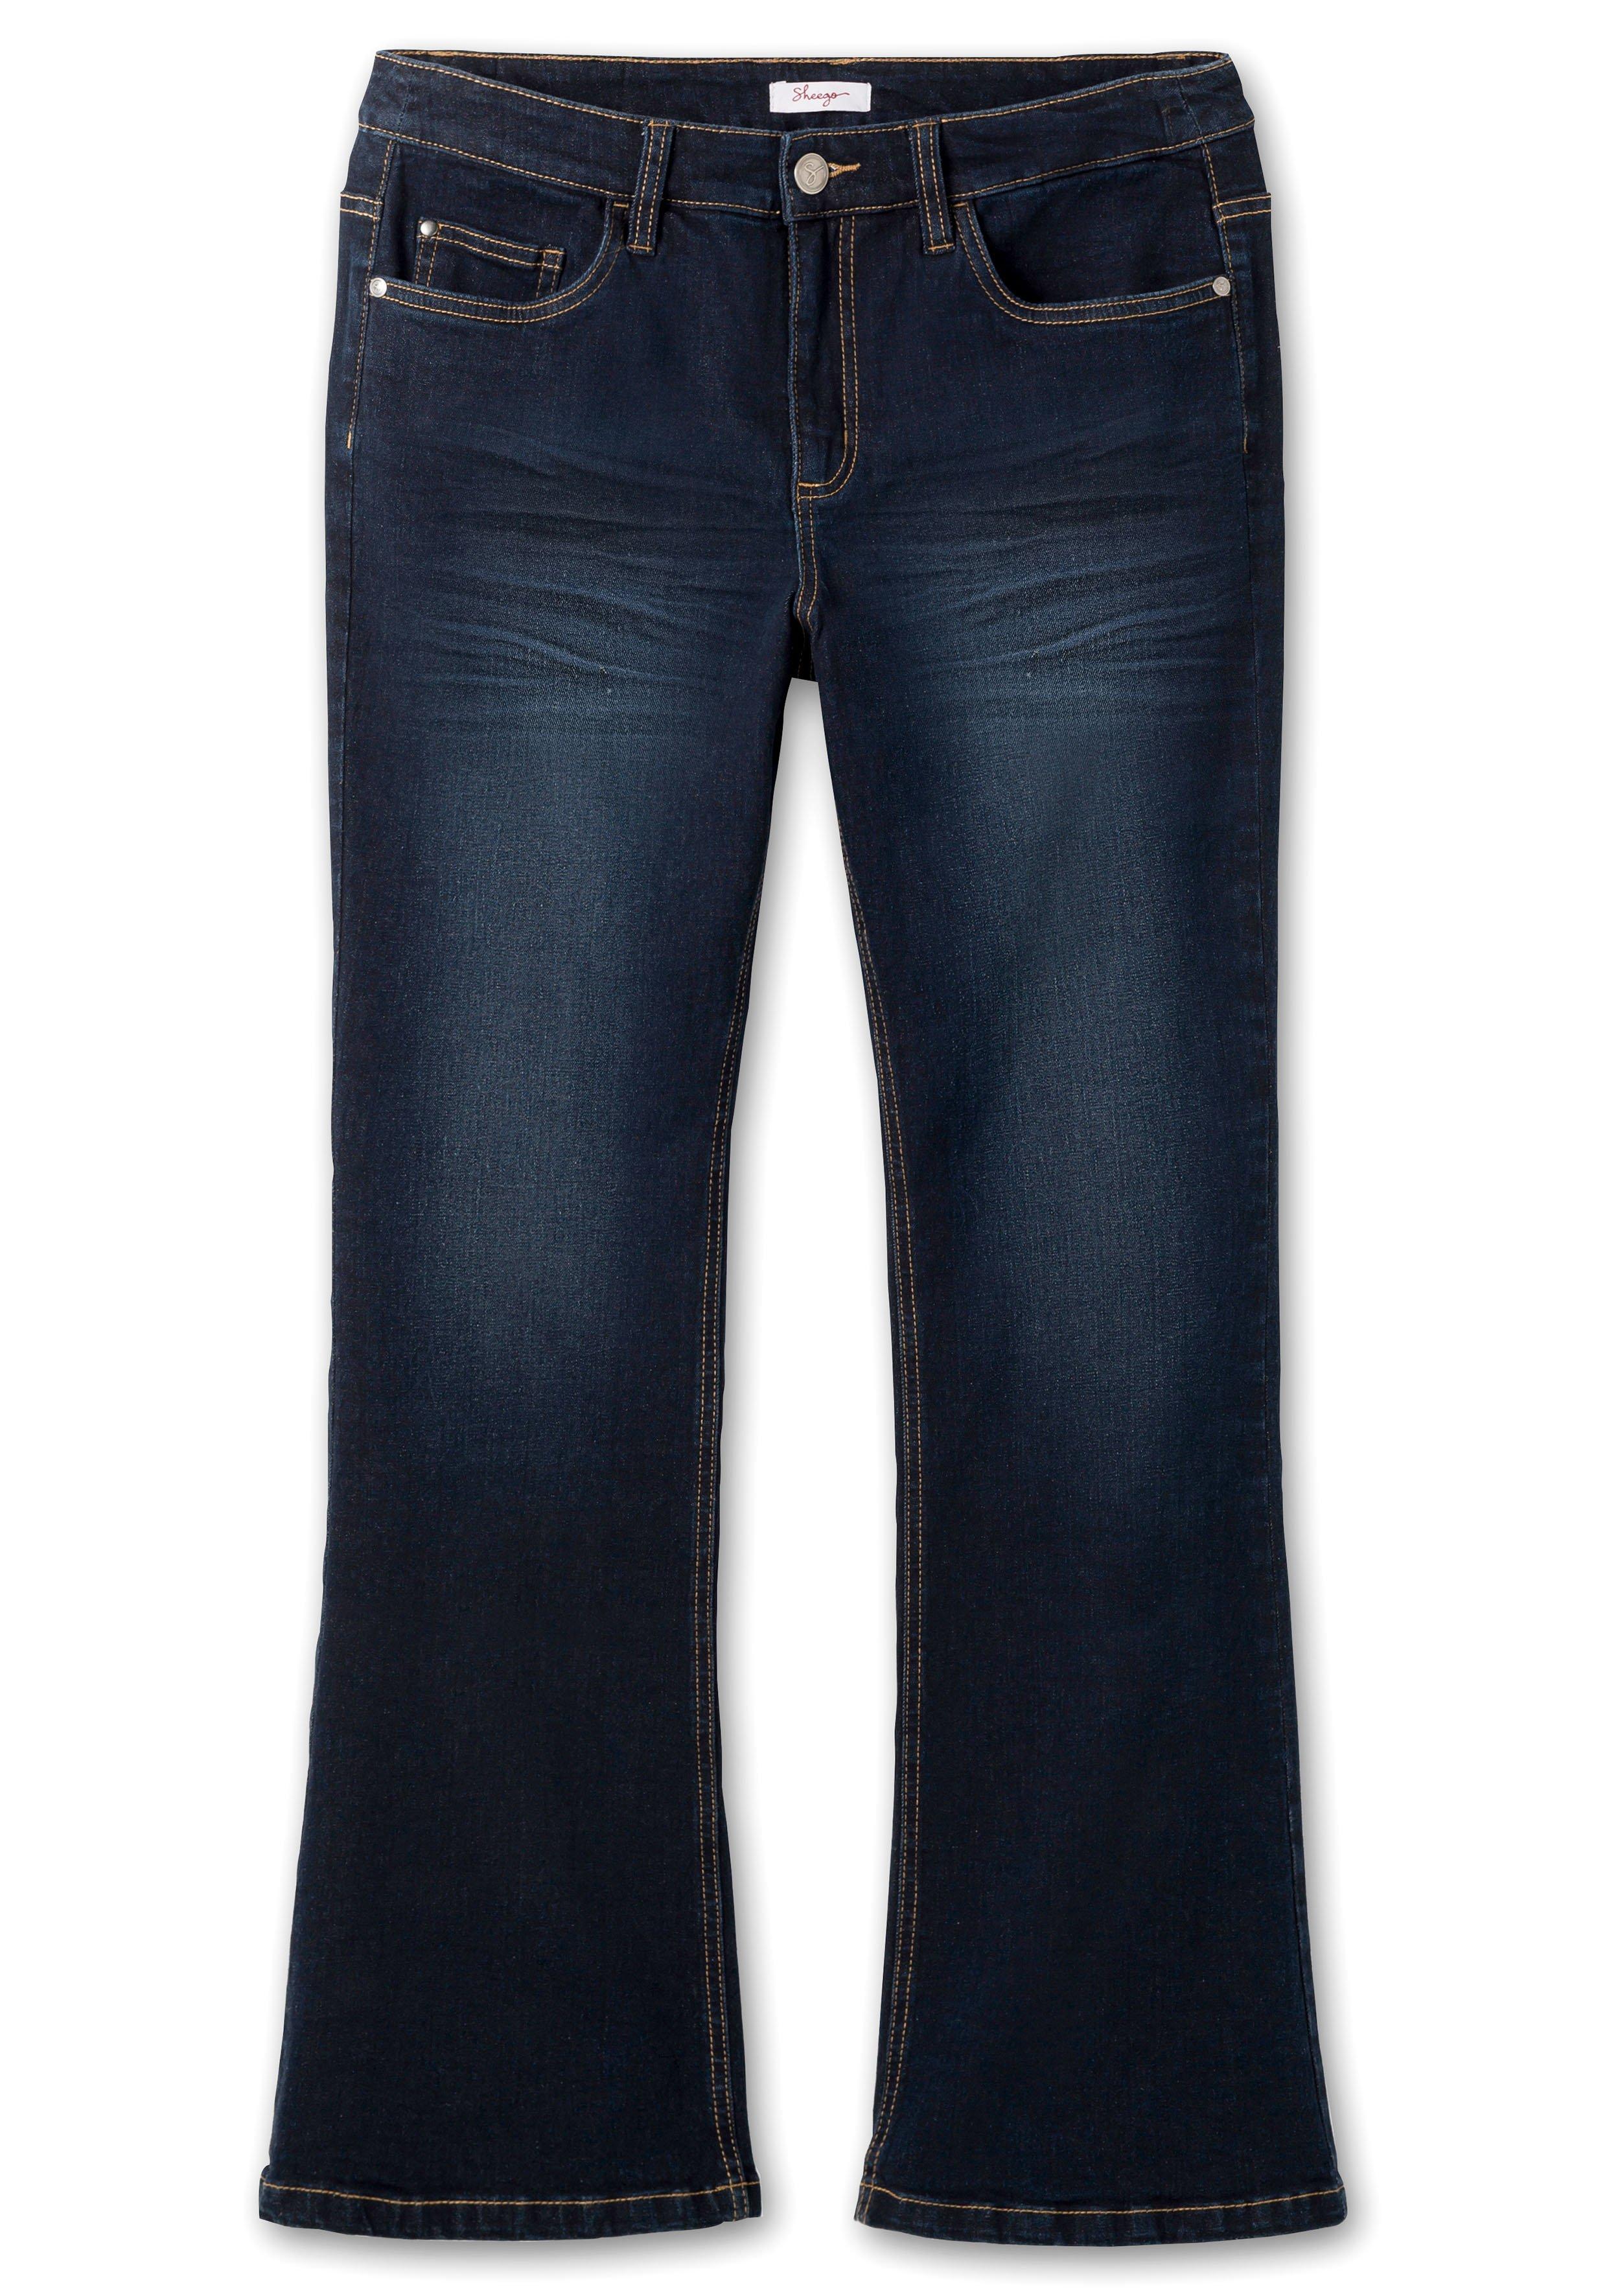 Jeansbluse mit Knopfleiste sheego Denim blue dark - Brusttaschen | und